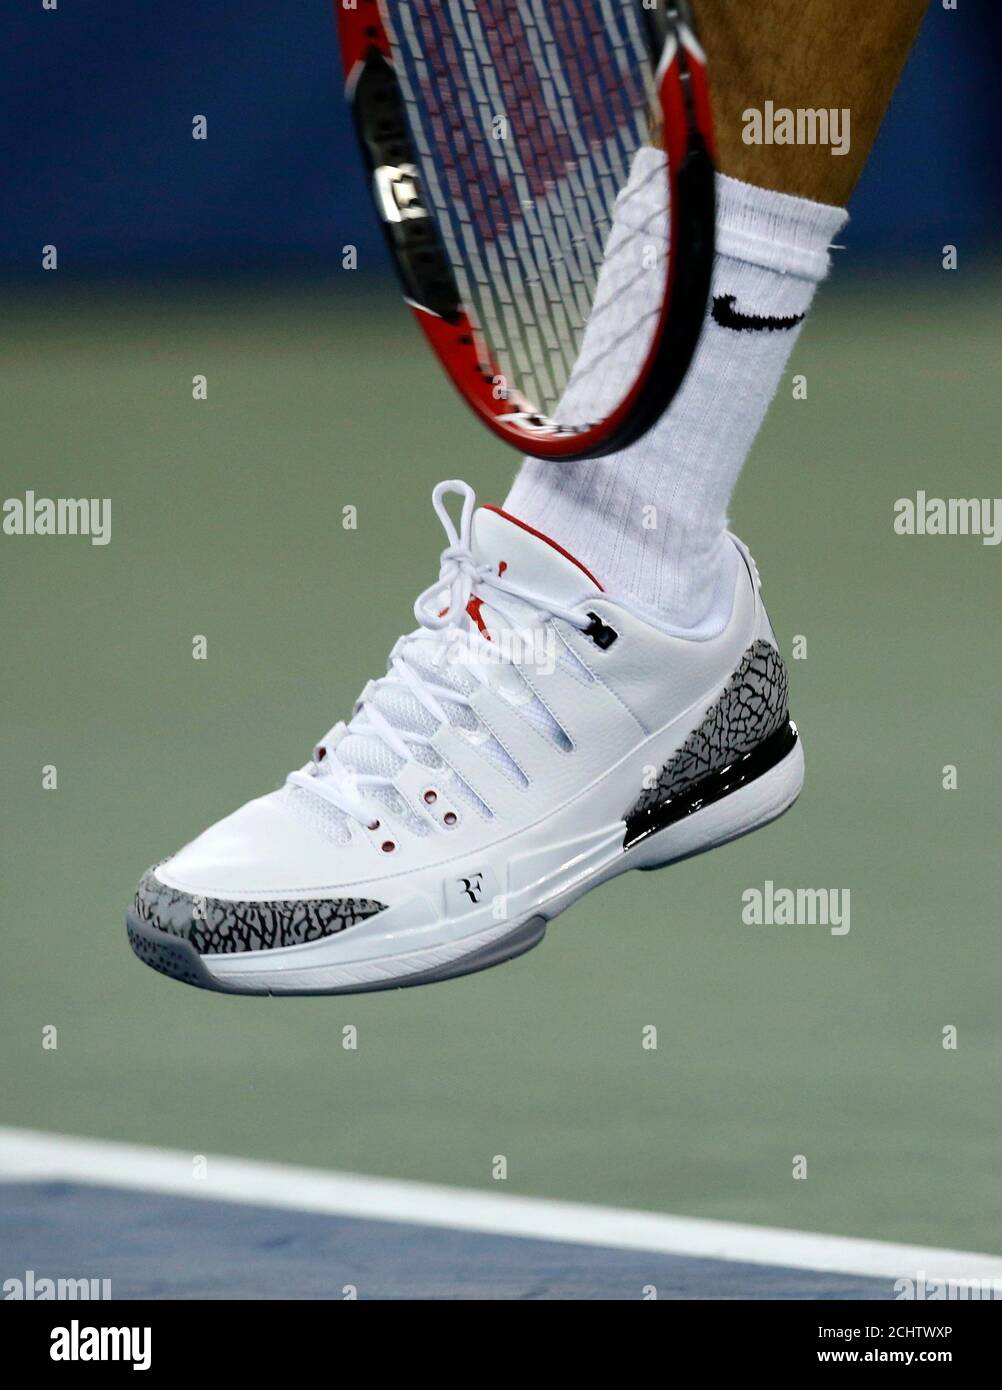 Roger Federer de Suisse sert tout en portant une nouvelle chaussure, la  Nike Zoom Vapor 9 Tour AJ3 il a participé à la conception avec le grand  Michael Jordan de basket-ball, lors